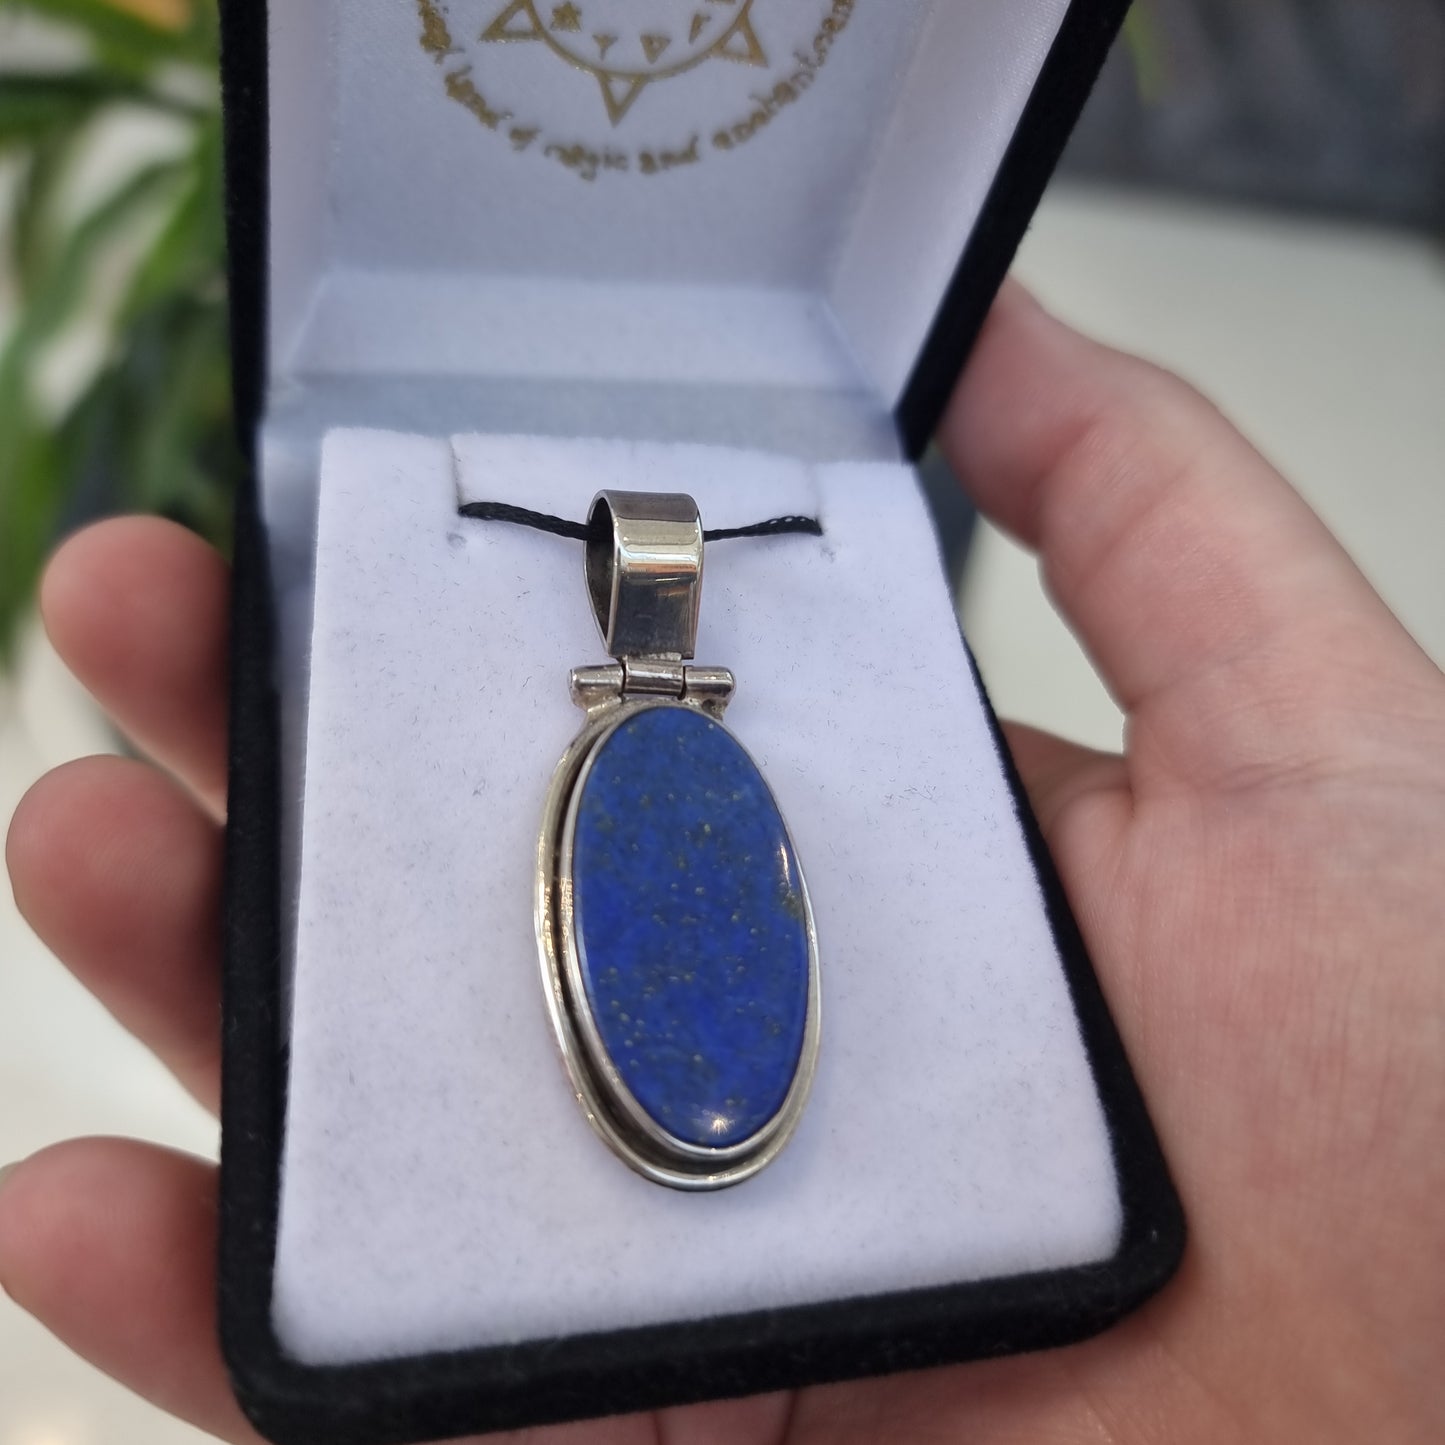 Lapis lazuli pendant - Rivendell Shop